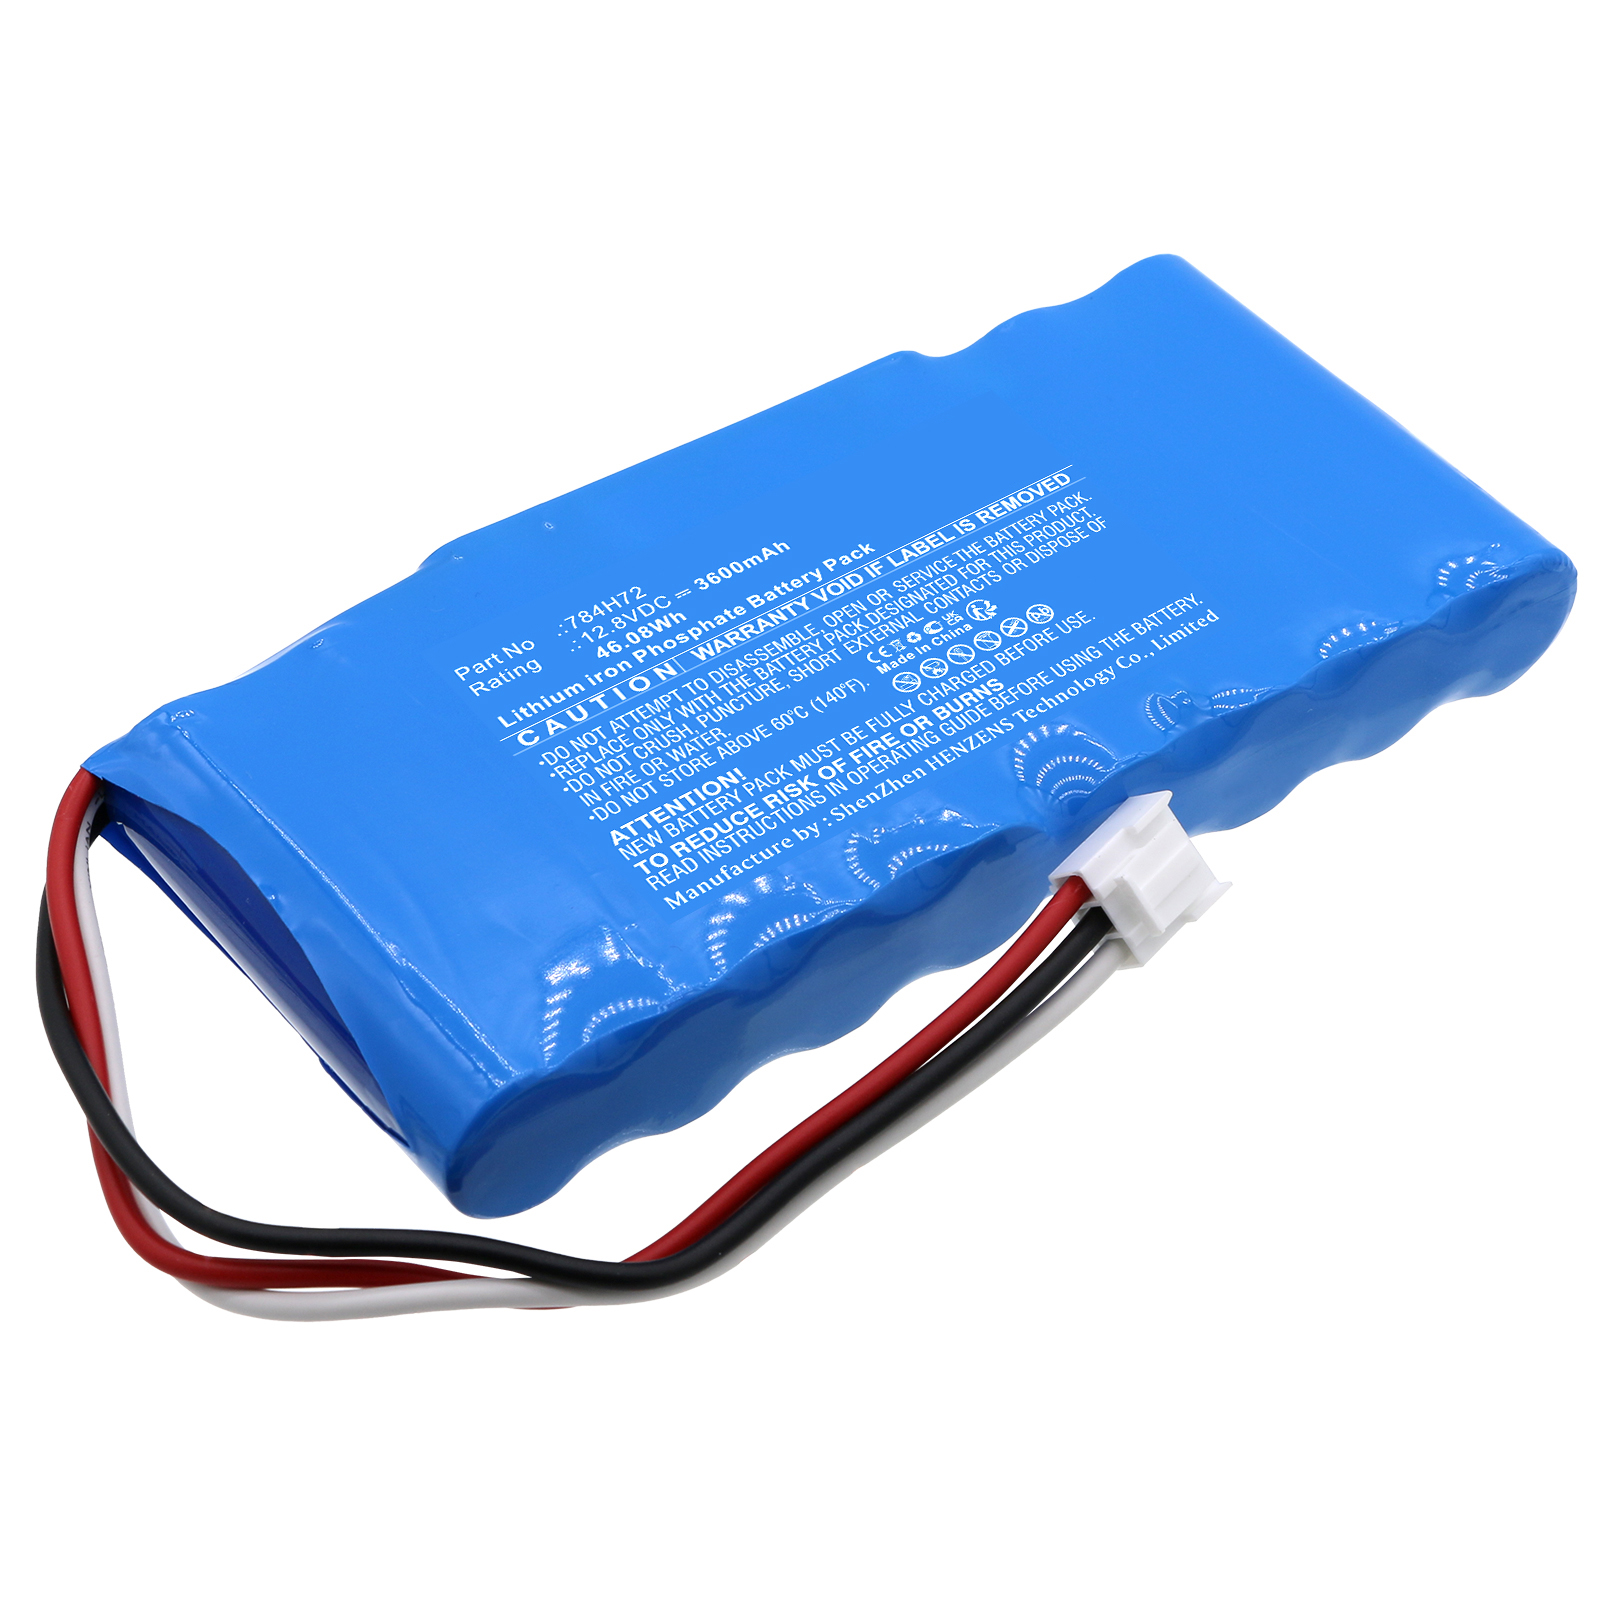 Synergy Digital Emergency Lighting Battery, Compatible with DUAL-LITE 784H72 Emergency Lighting Battery (LiFePO4, 12.8V, 3600mAh)